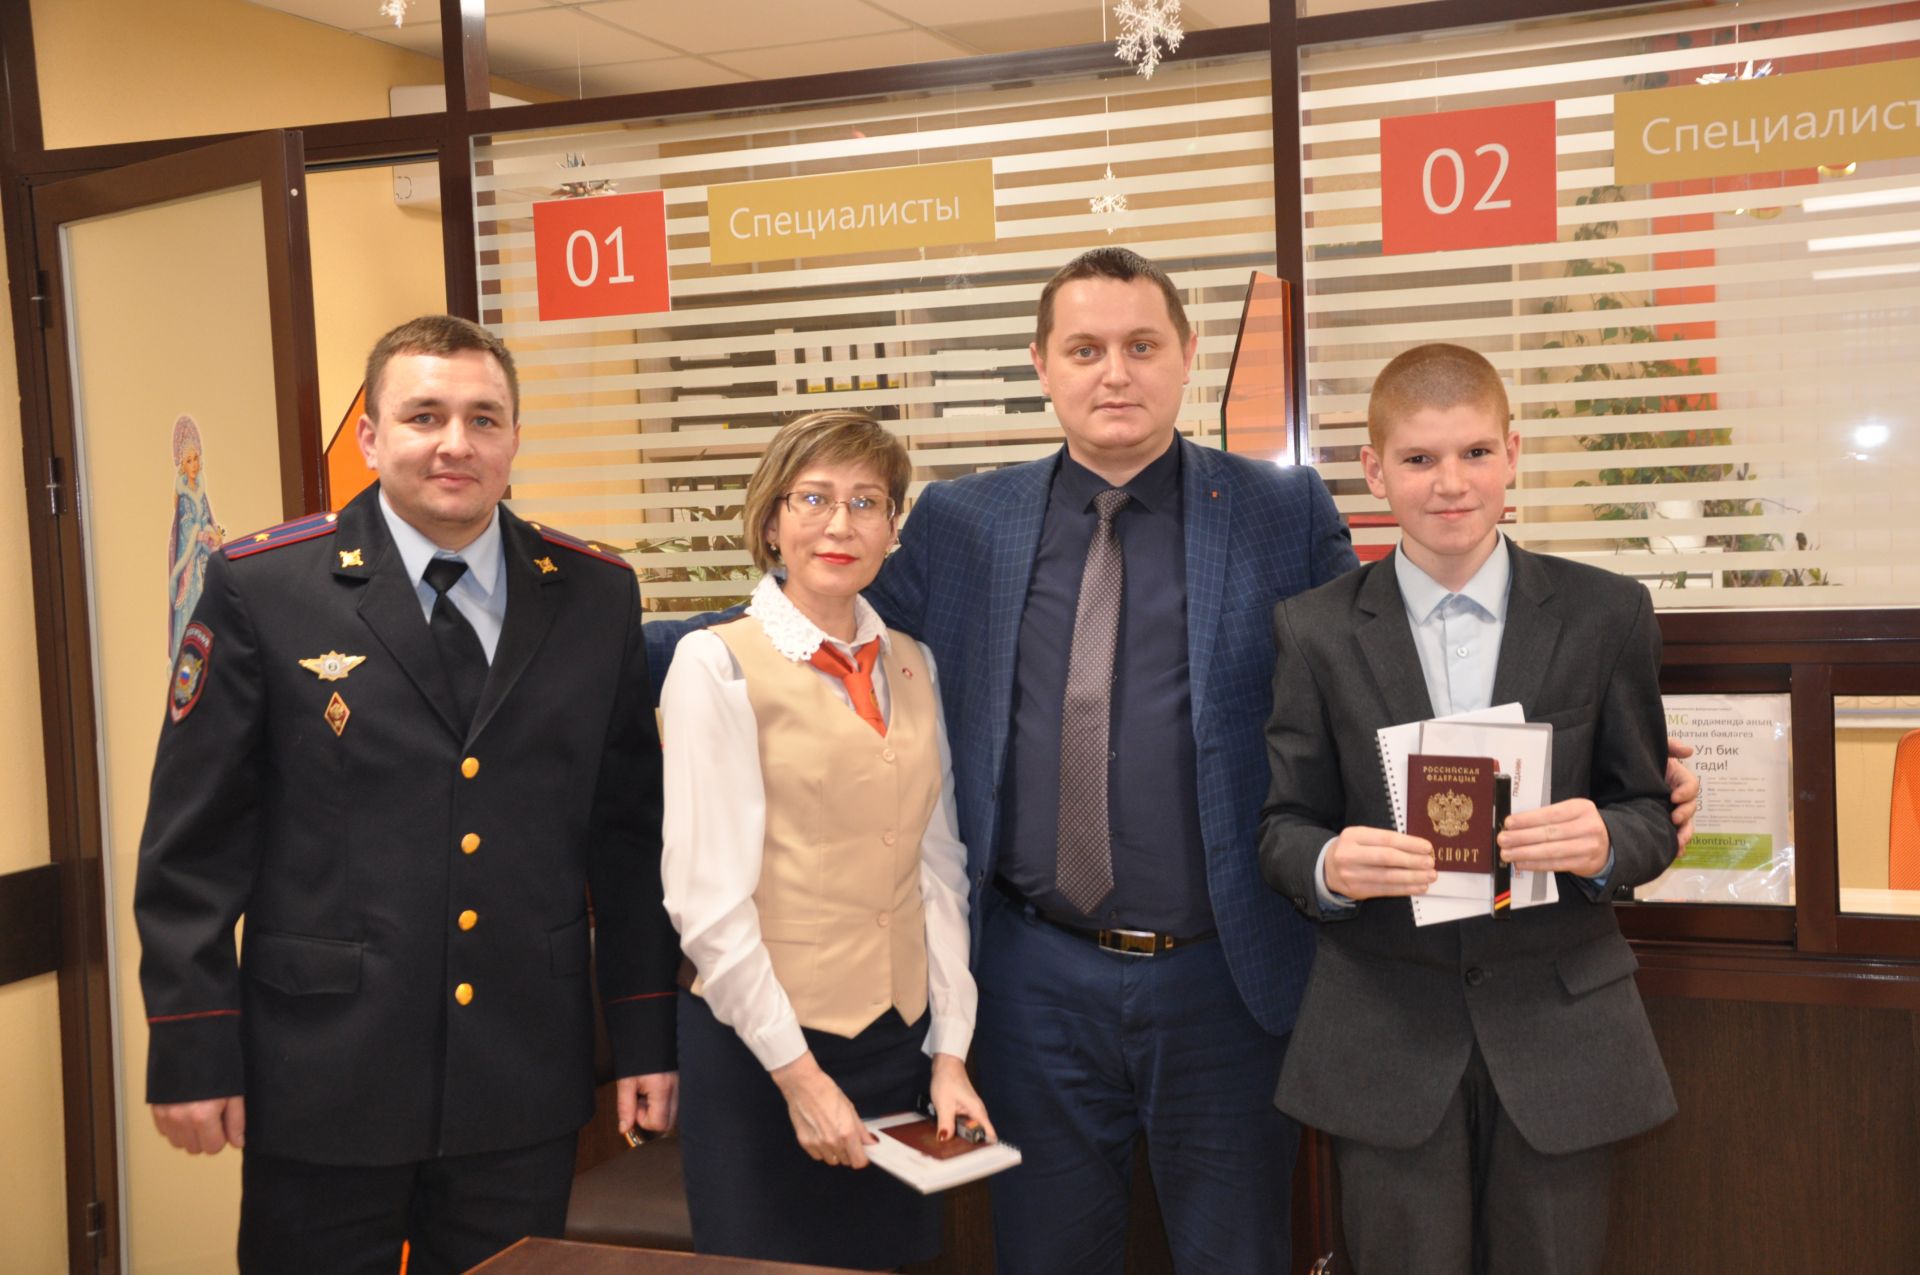 Россия Федерациясе Конституциясе көне уңаеннан 14 яшькә җиткән гражданнарга паспортлар тапшырылды